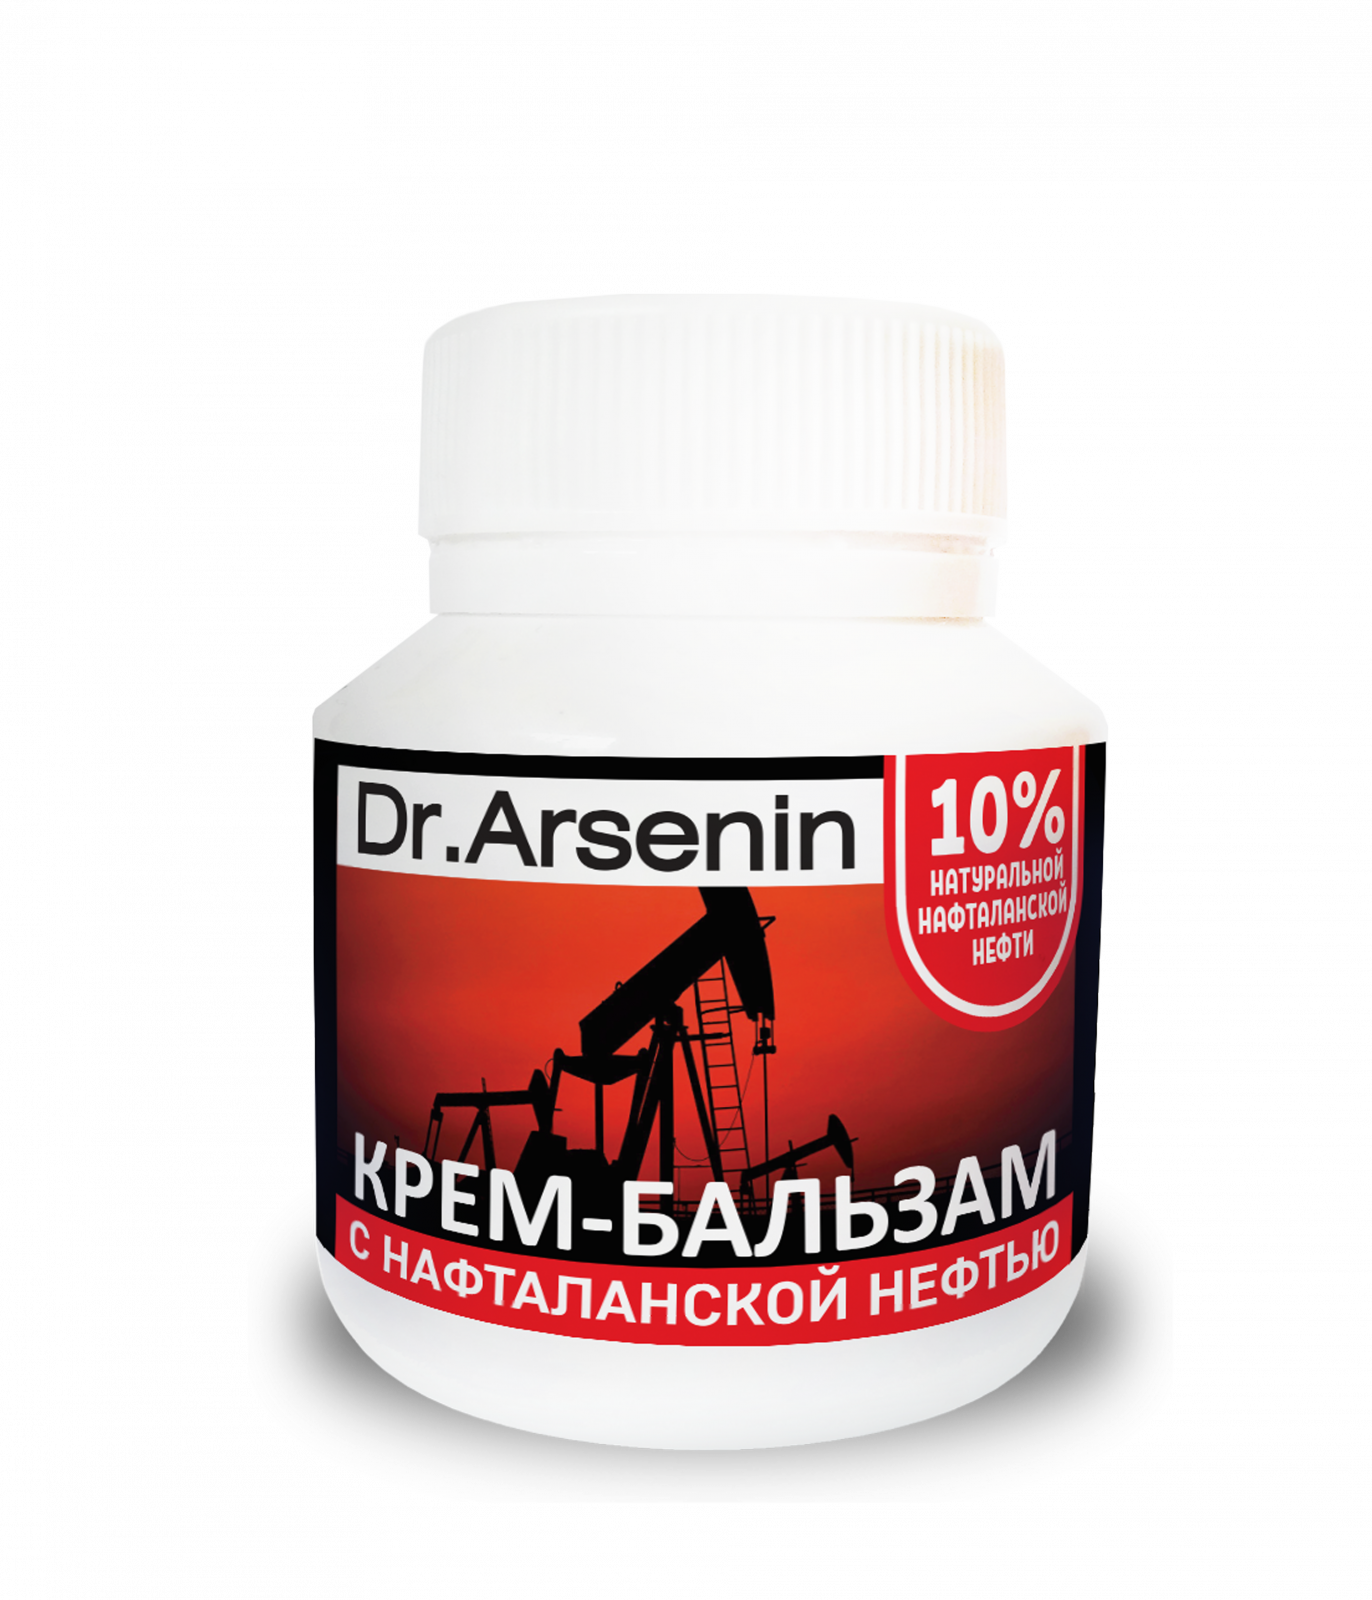 Натуральный уход за кожей тела «Крем-бальзам с нафталанской нефтью Dr. Arsenin 90 мл» - Уход за телом